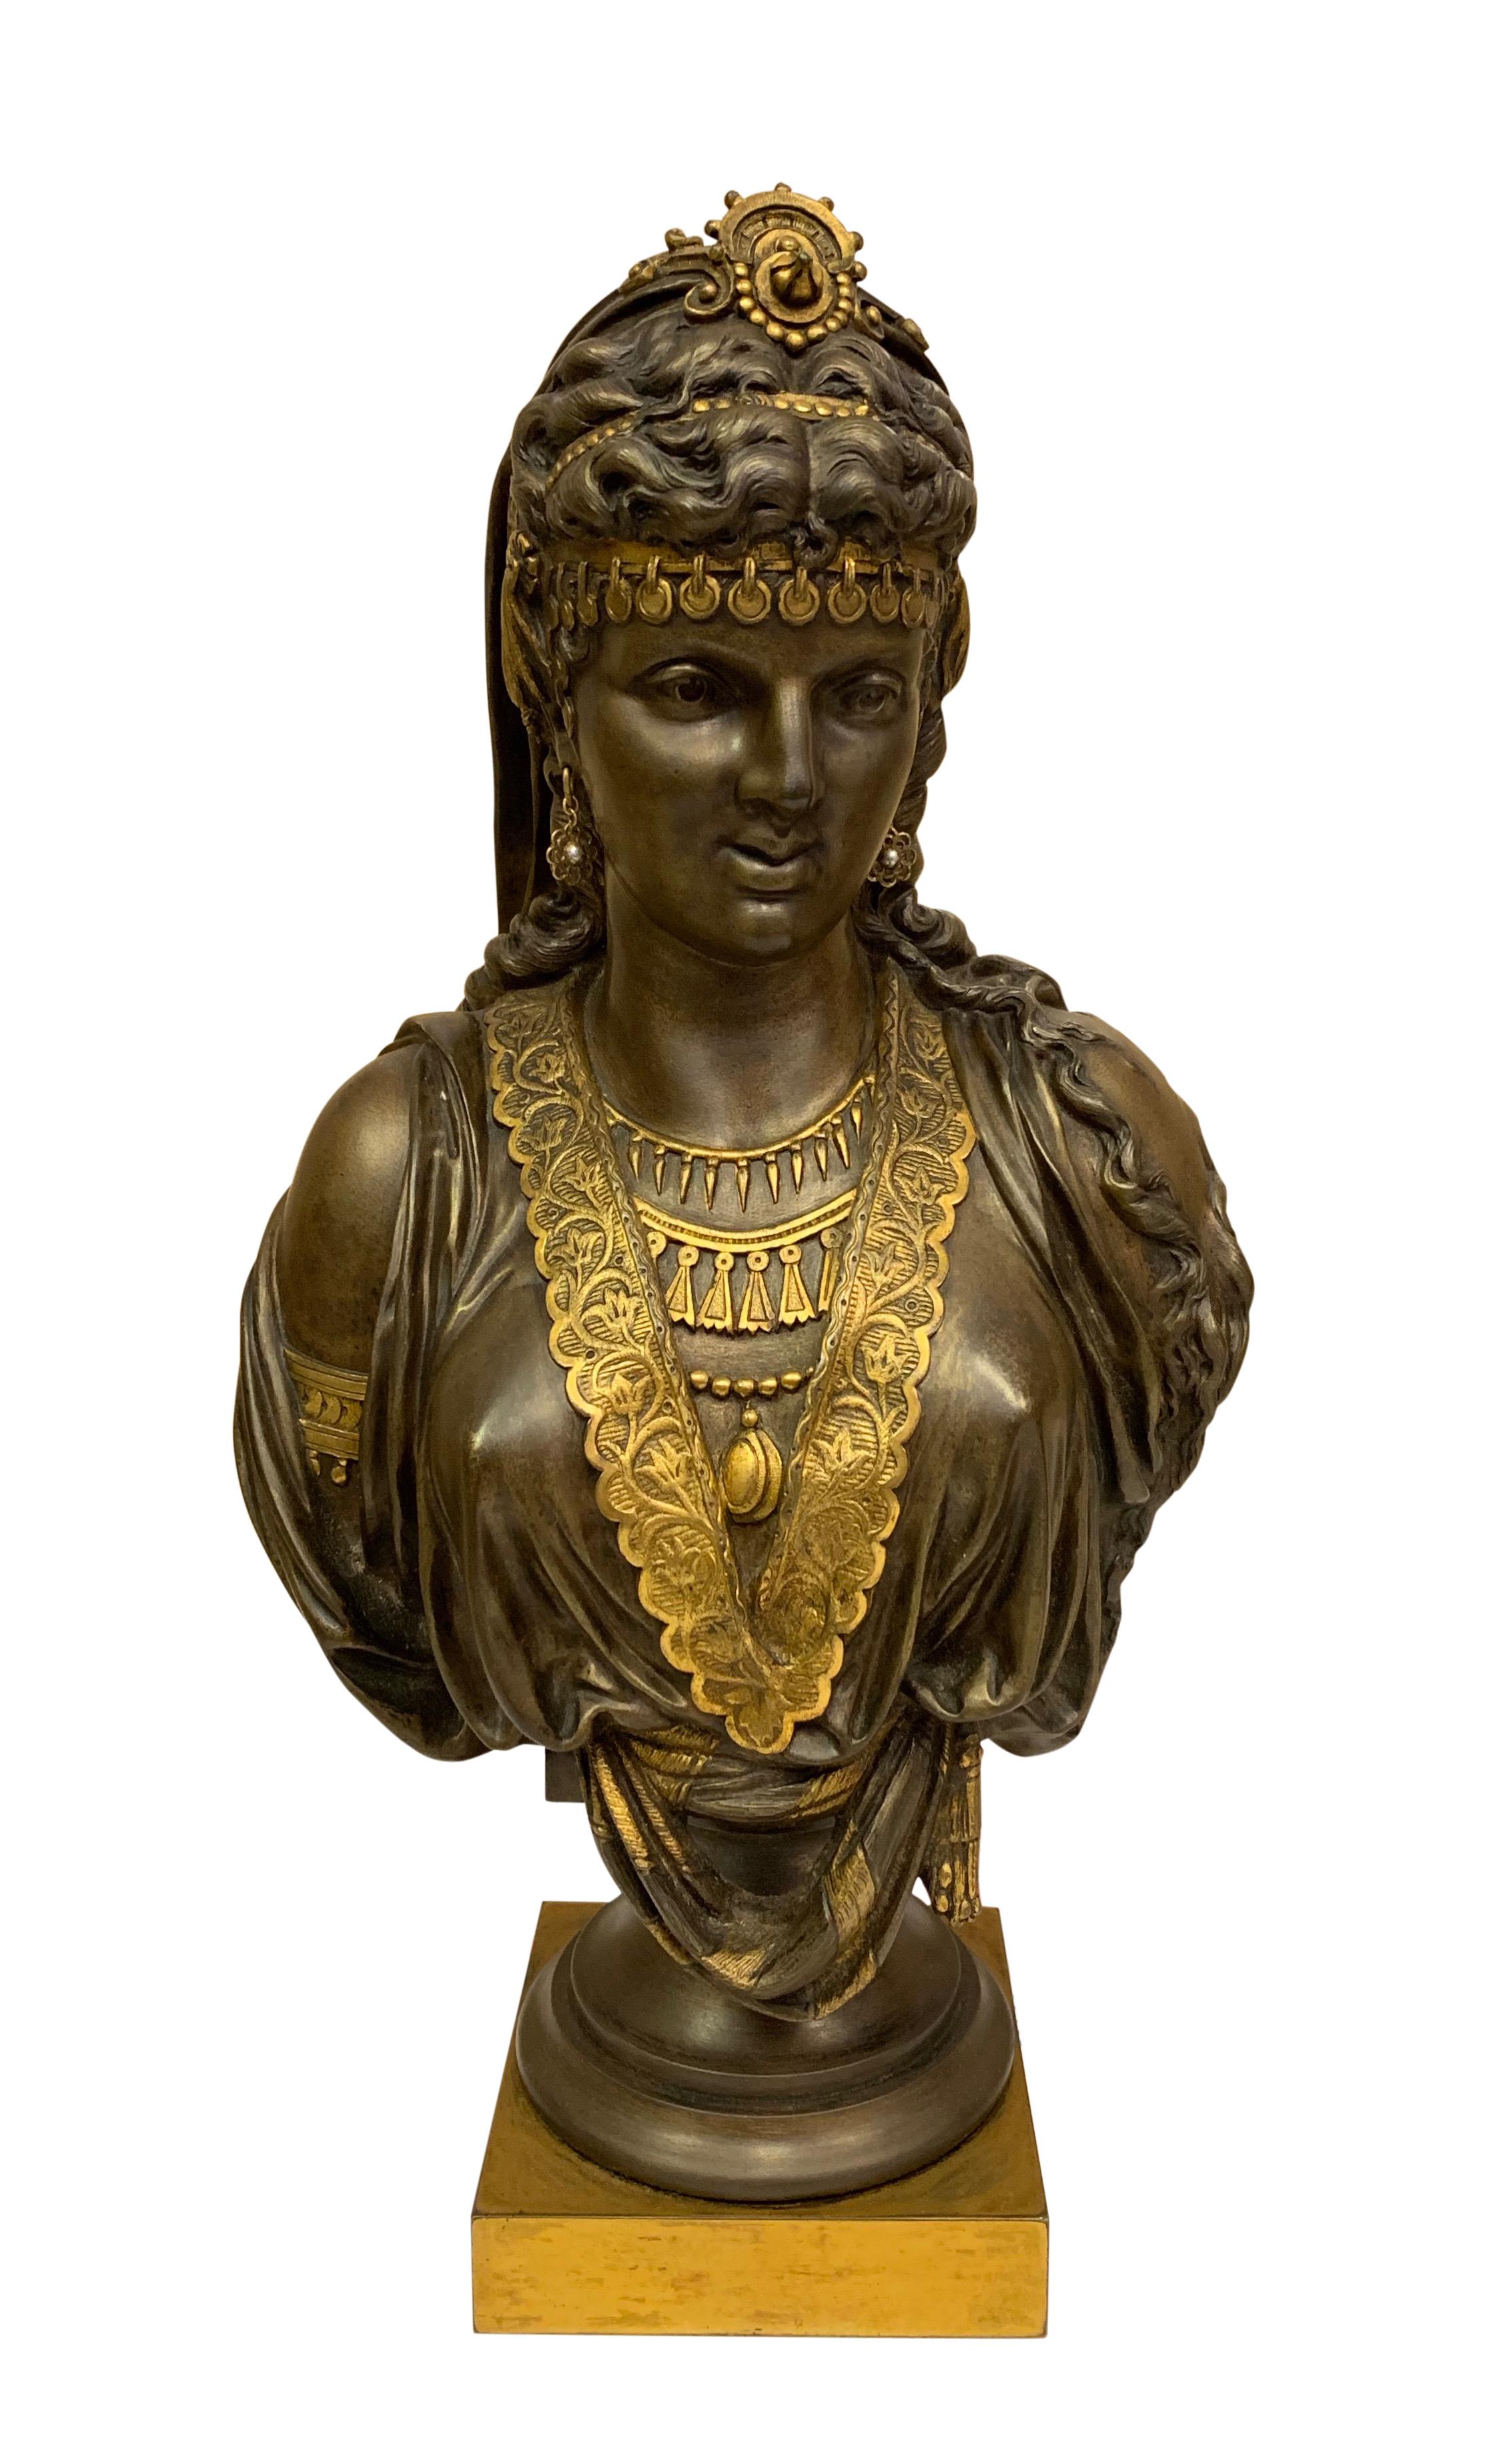 Ein Paar vergoldeter und patinierter orientalischer Bronzebüsten von hervorragender Qualität aus dem 19. Die jungen Frauen trugen traditionelle orientalische Kleidung und Perlenketten und Ohrringe,

um 1860

Abmessungen
Höhe 14